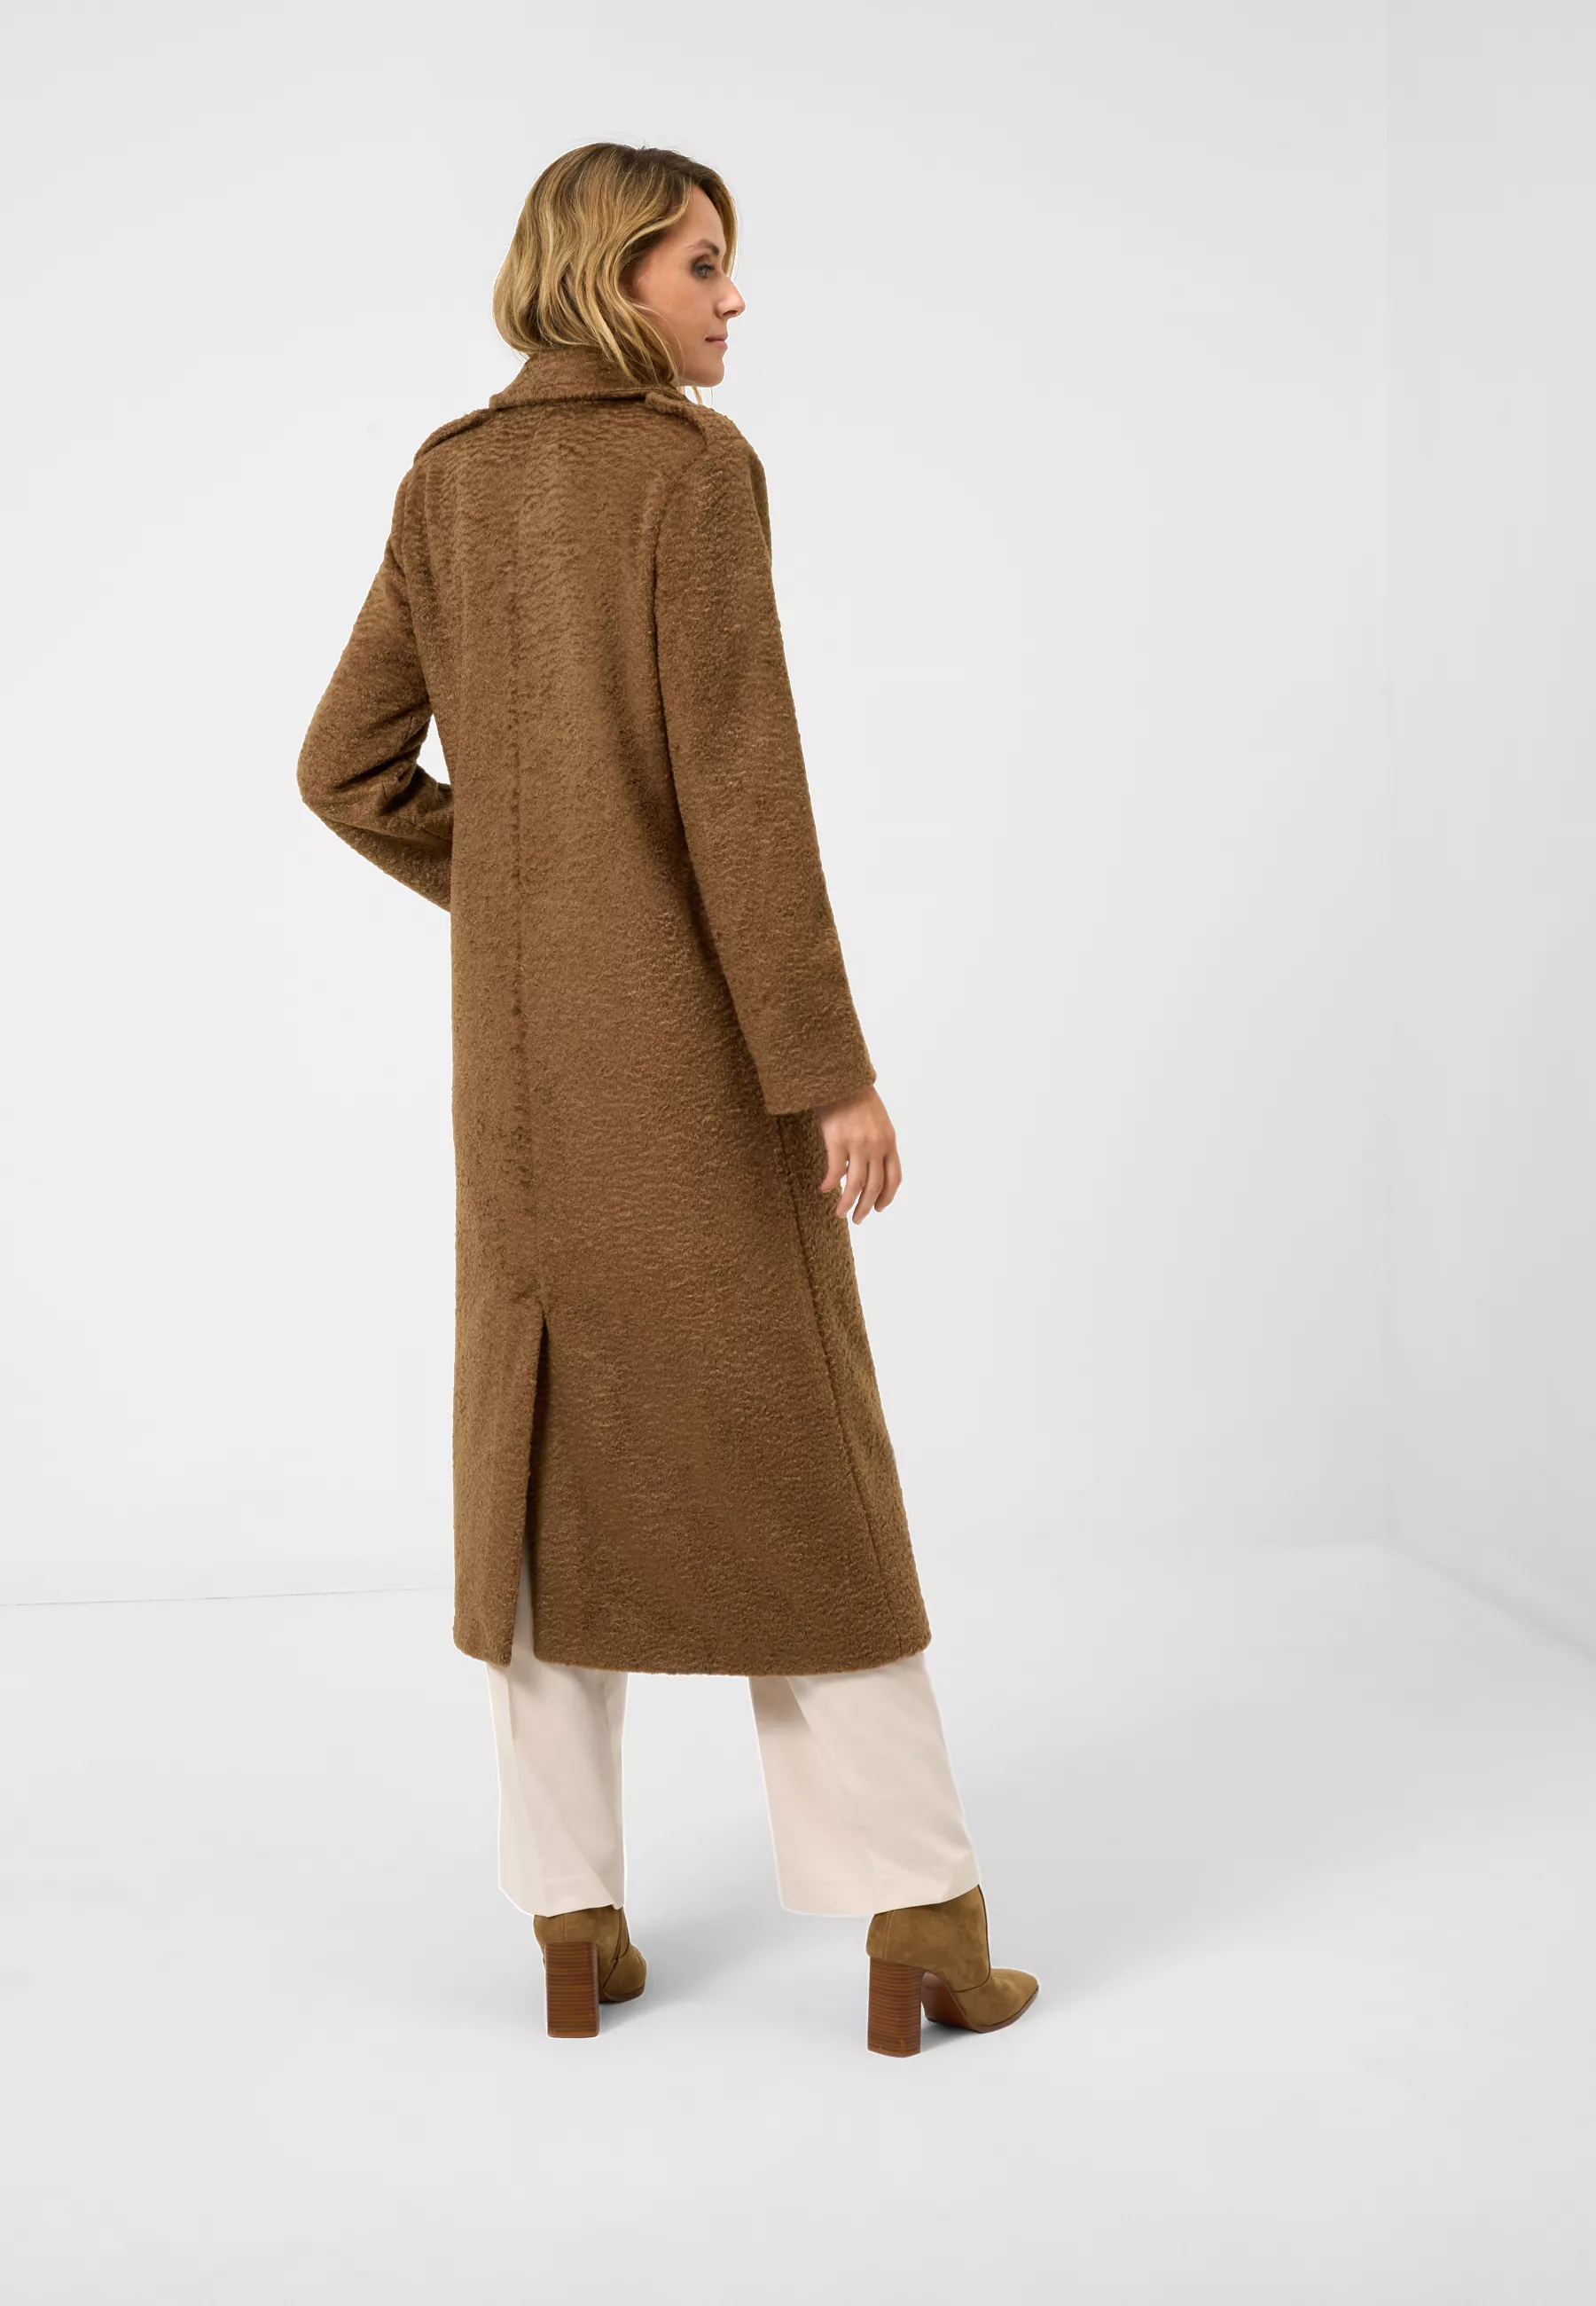 Damen Textil Mantel Pina in Braun von Ricano, Rückansicht am Model